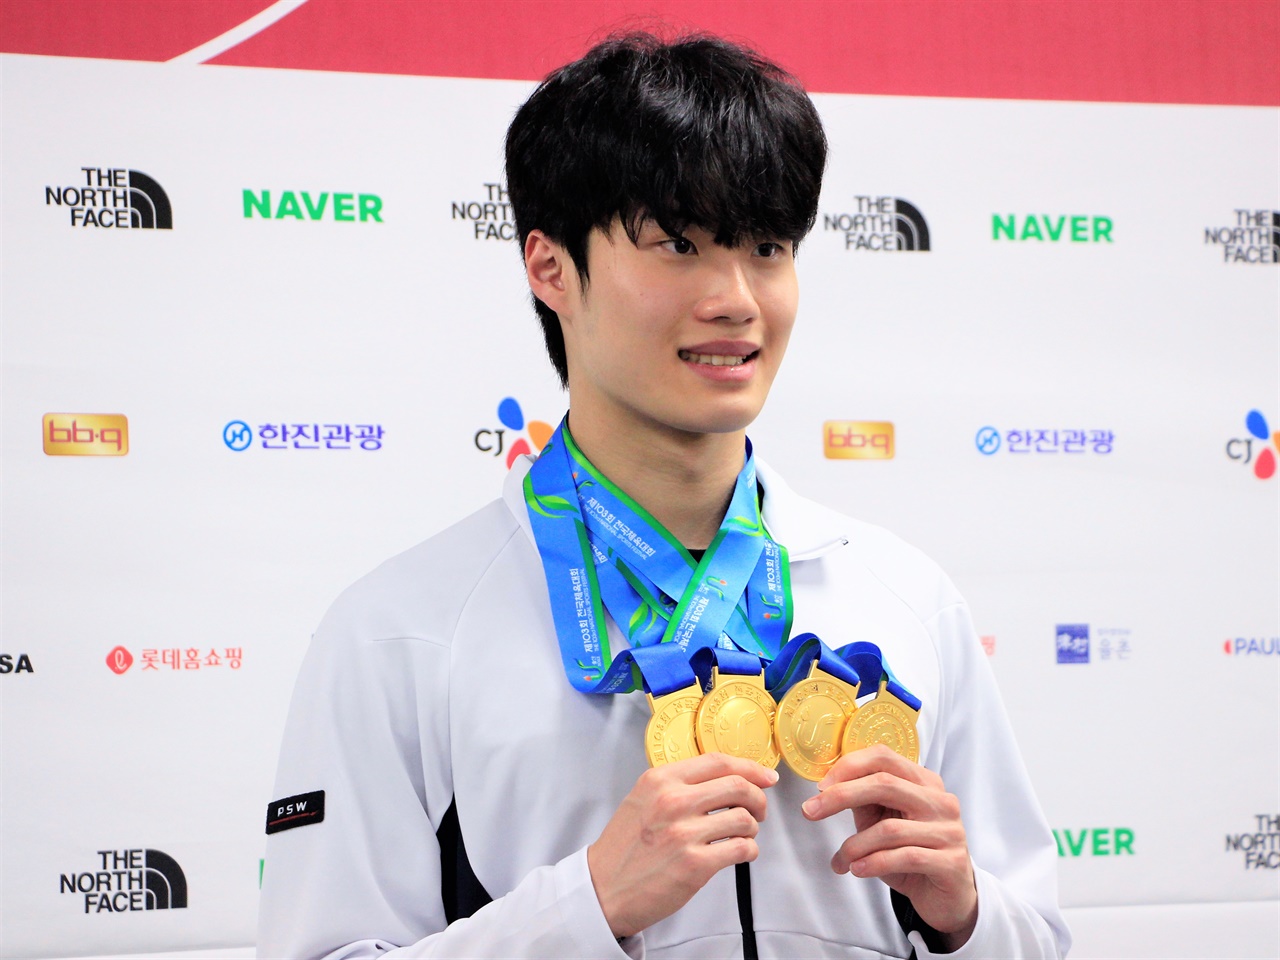 메달 네 개 들고 제103회 전국체육대회의 대회 MVP로 선정된 수영 황선우(강원도청) 선수가 13일 열린 기자회견에서 메달을 들어보이고 있다.